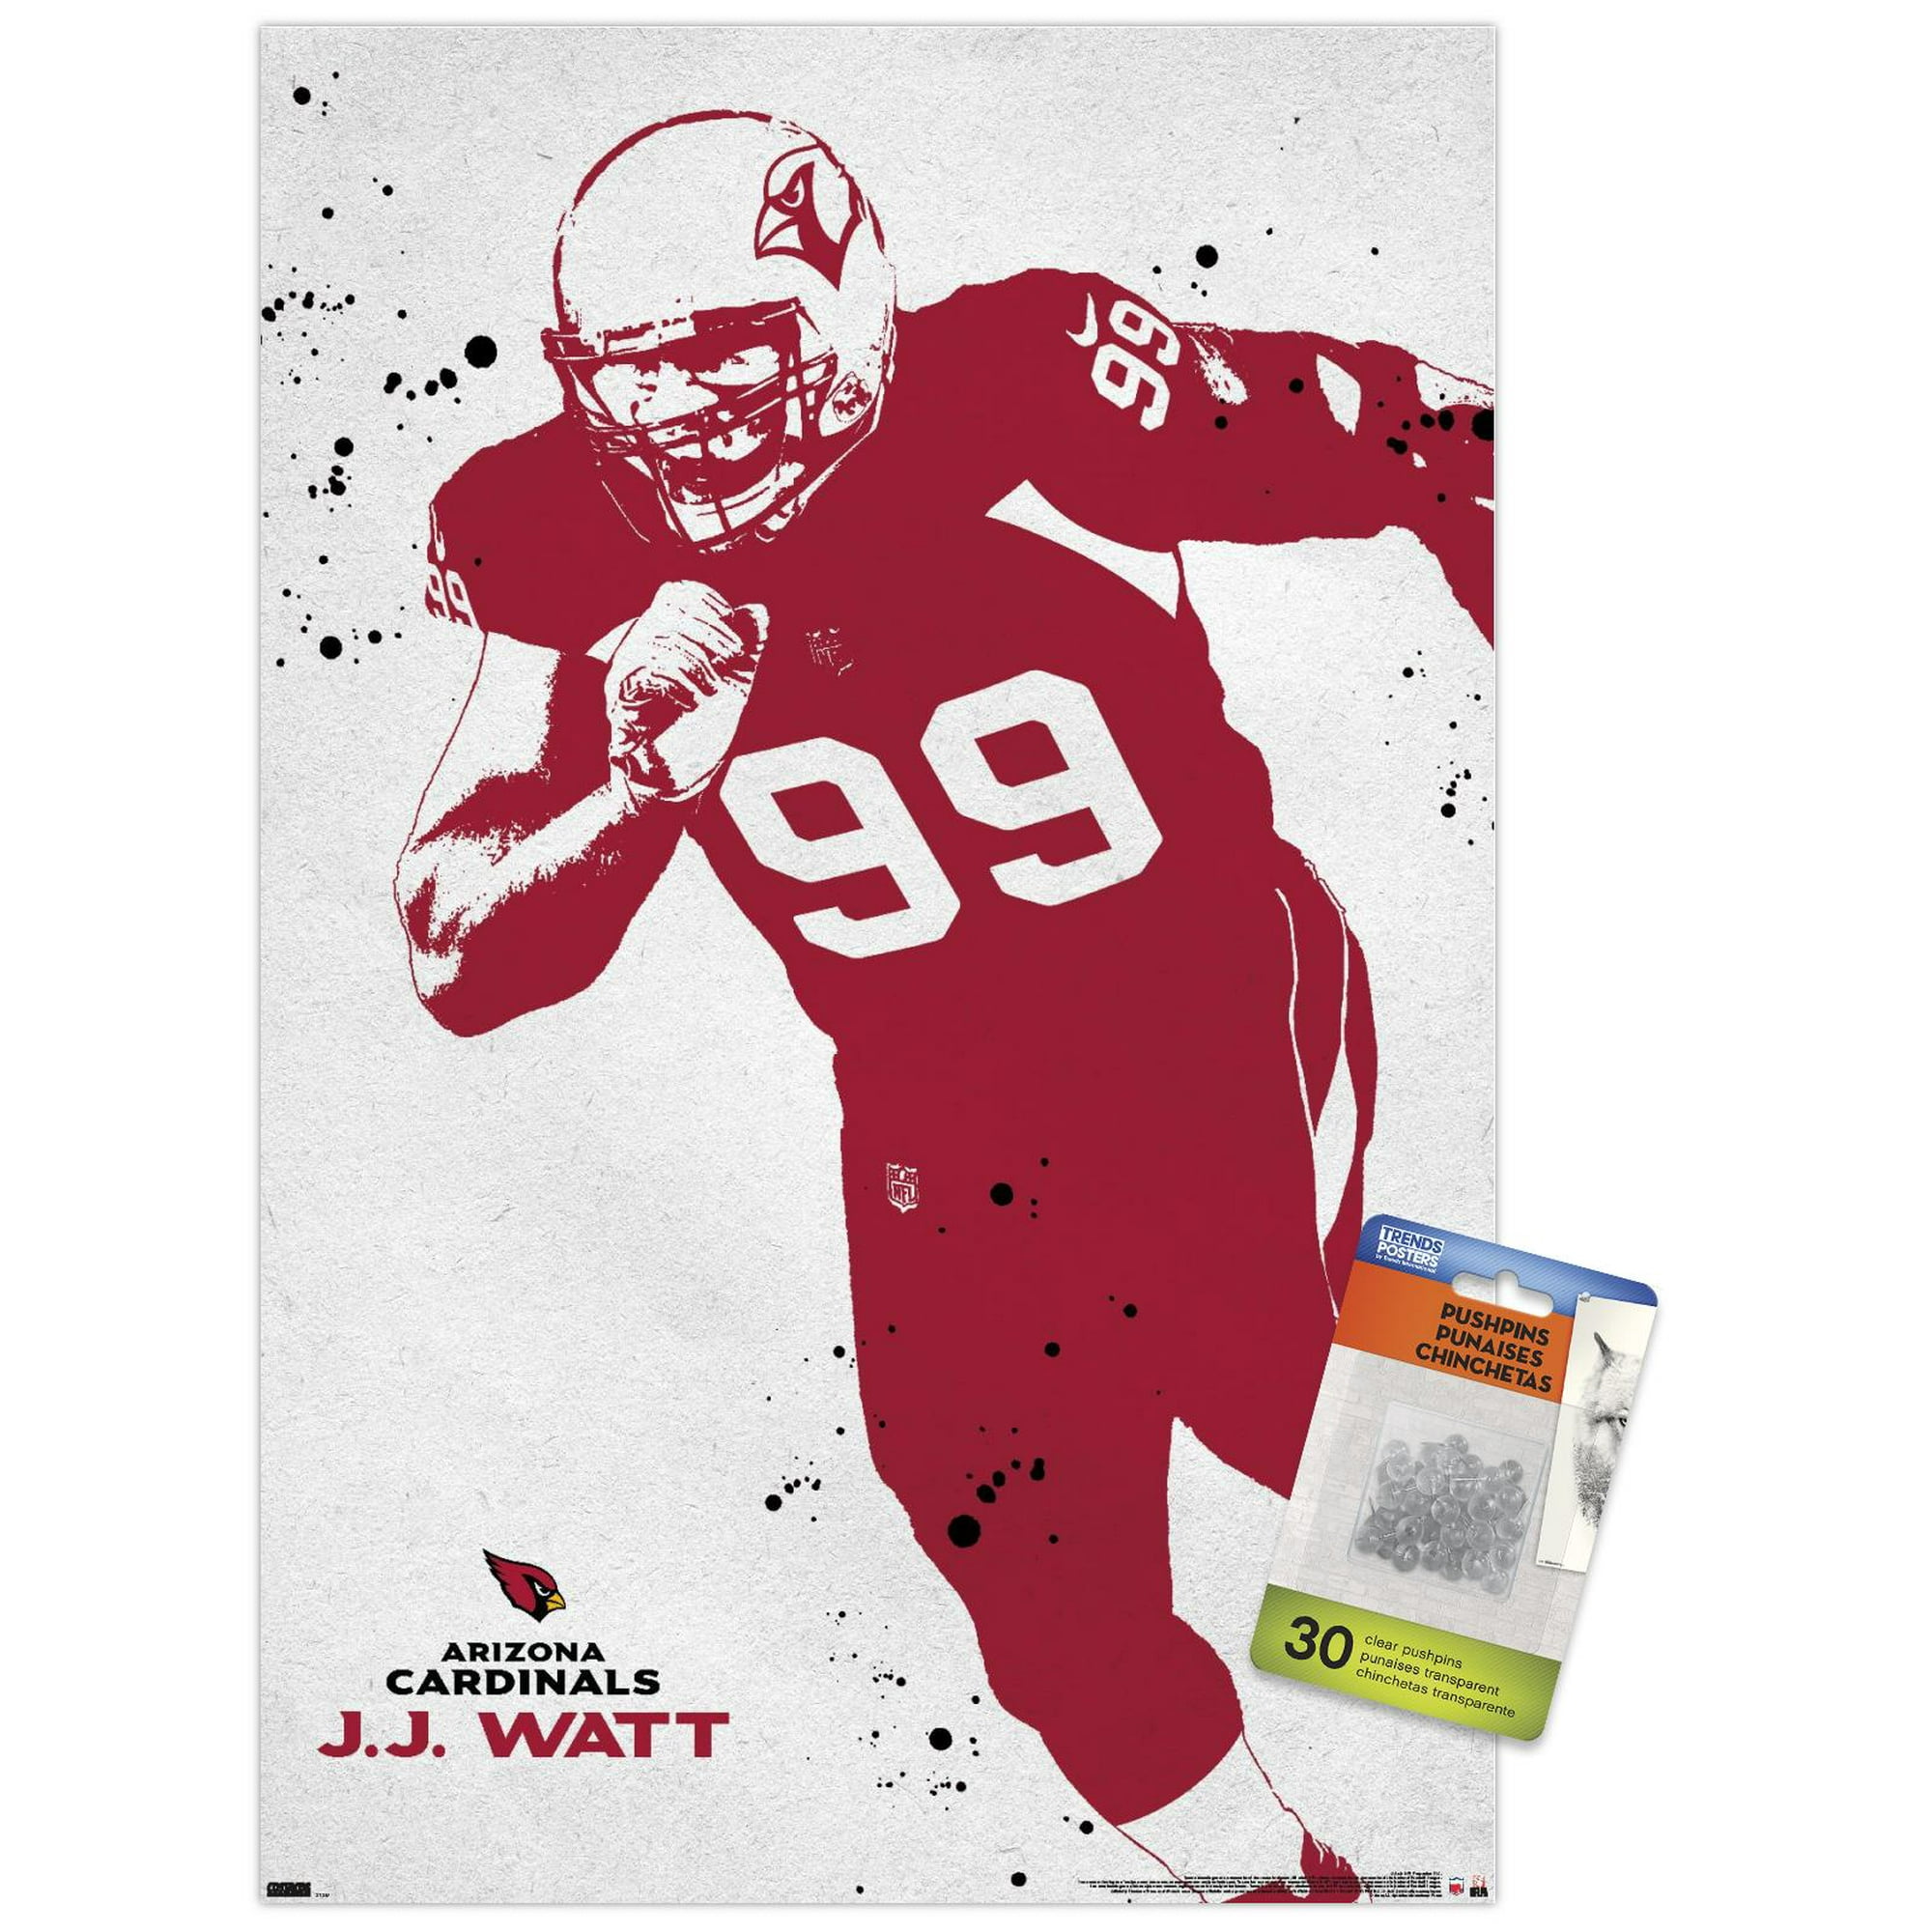 NFL Arizona Cardinals - J.J. Watt 21 Wall Poster with Pushpins, 14.725' x  22.375' 